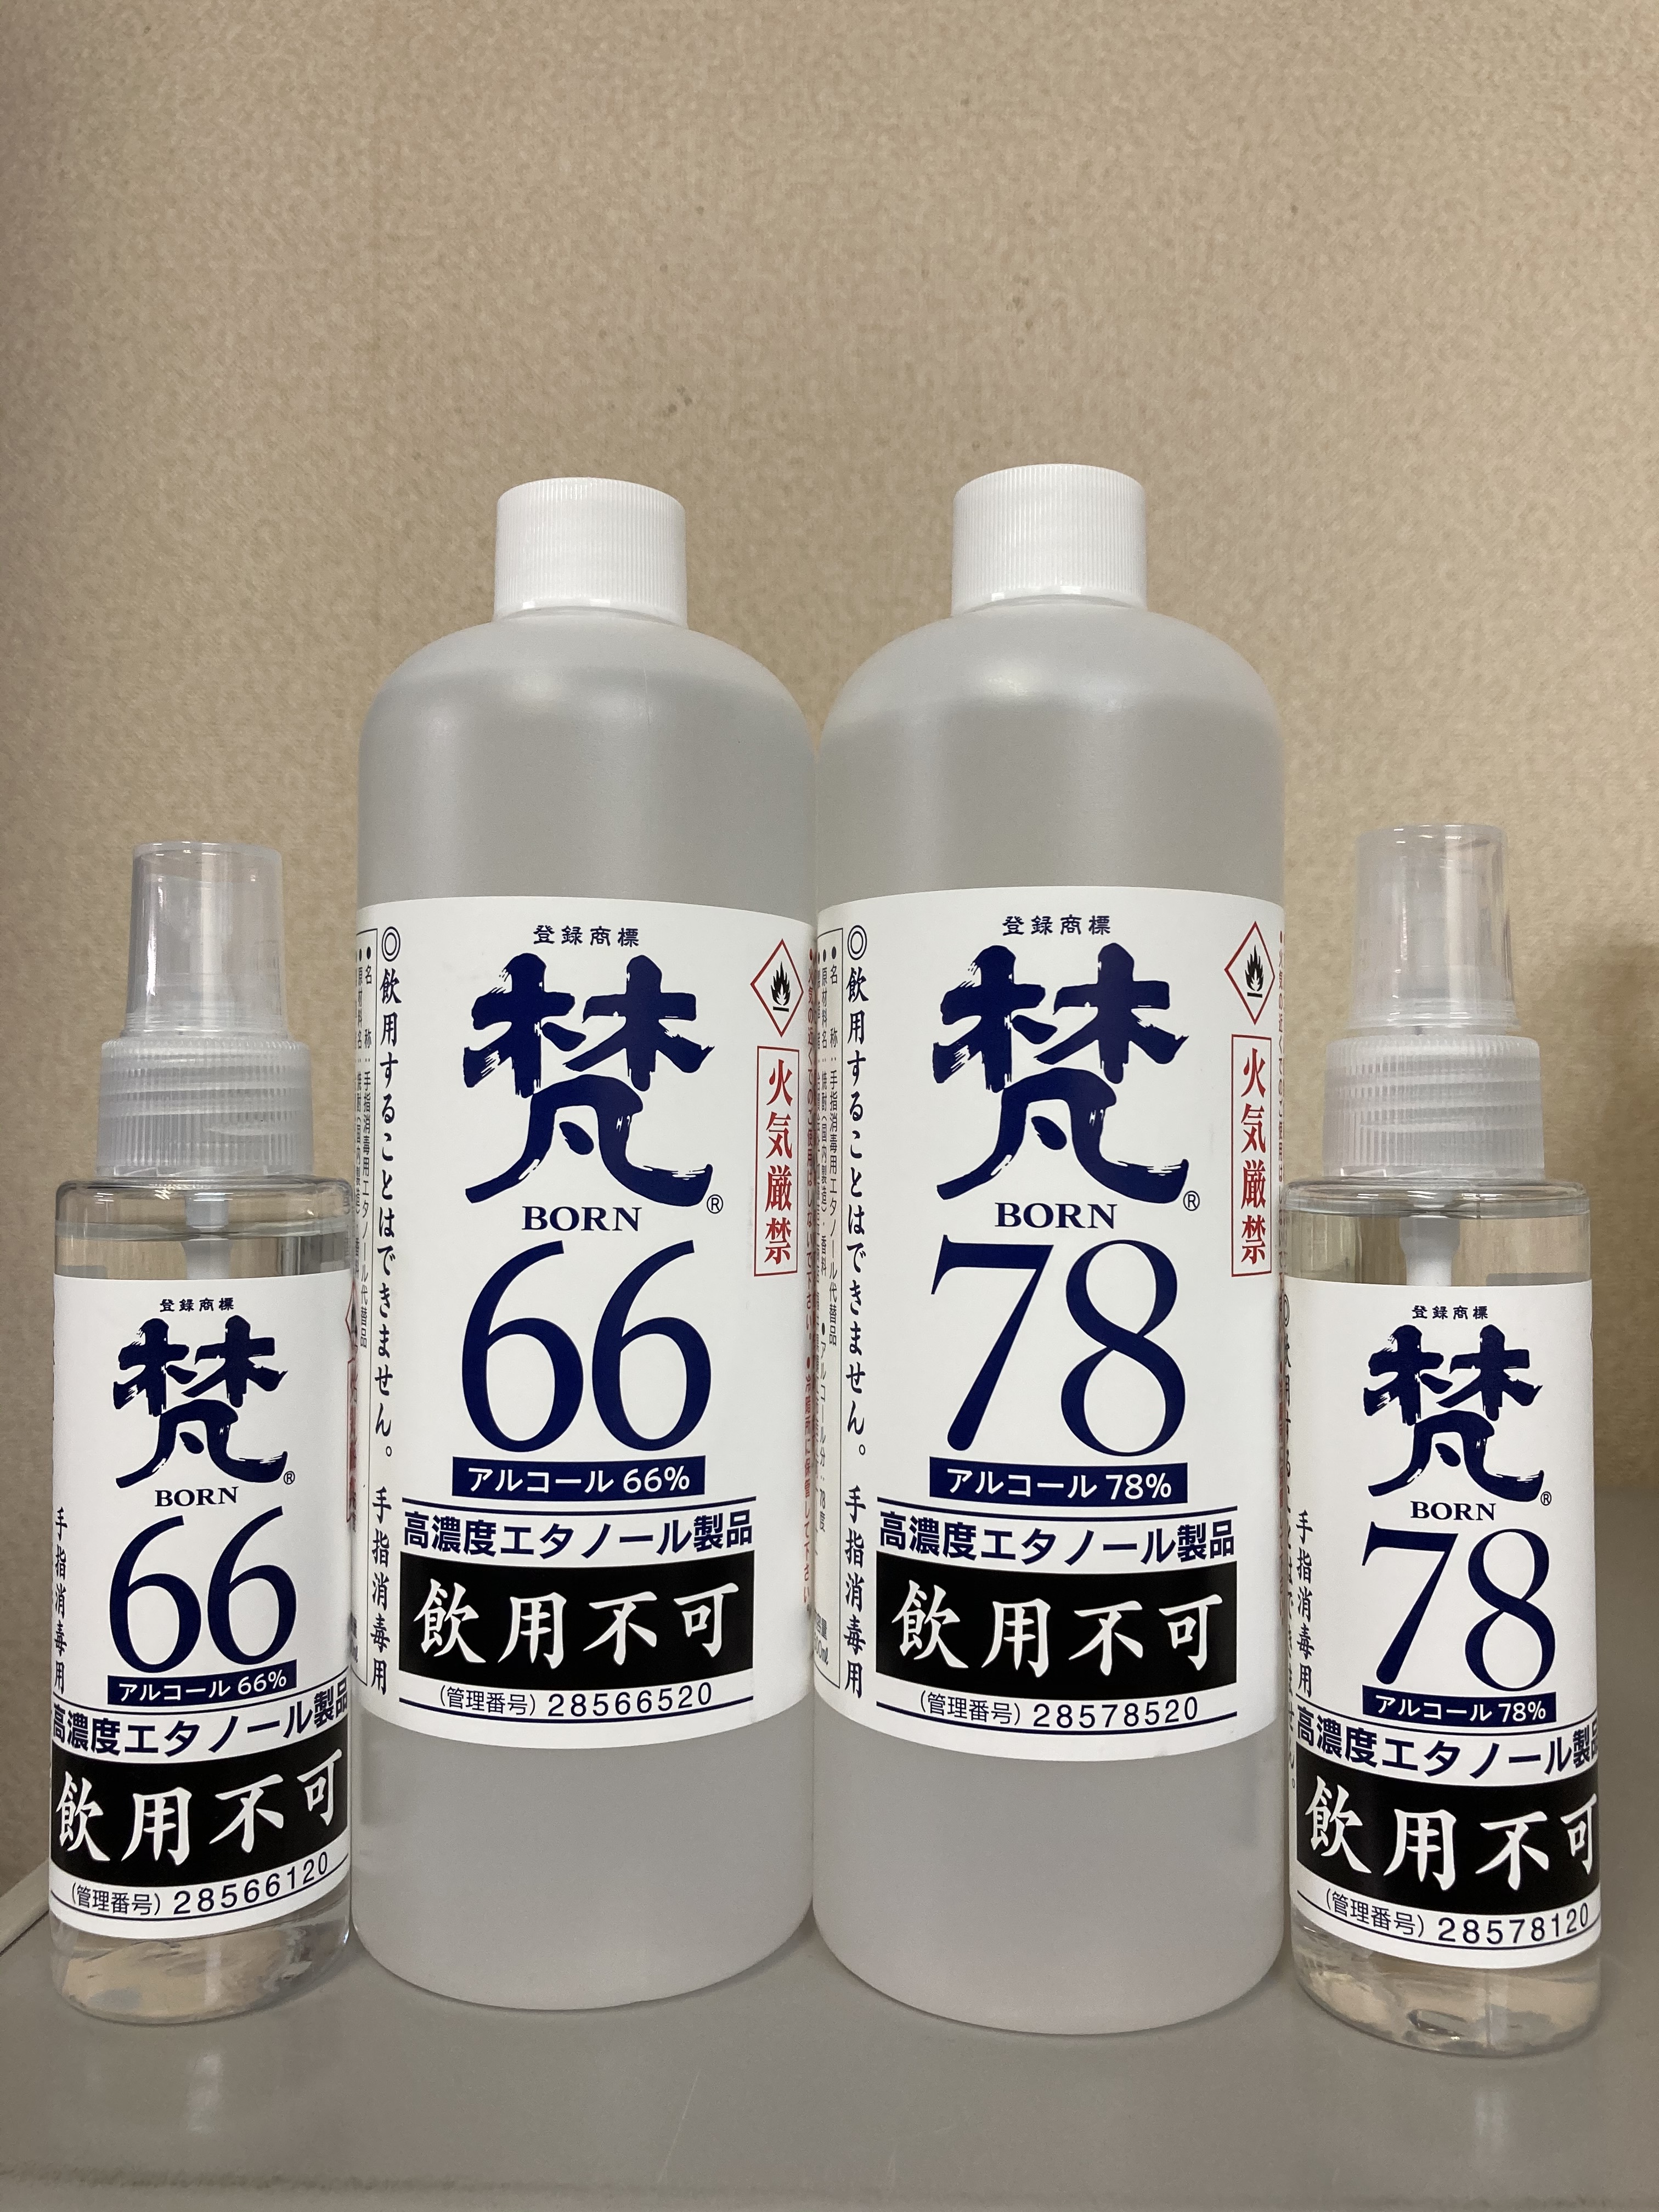 梵66・梵78」高濃度エタノール製品(手指消毒用)発売開始 日本酒「梵」の酒蔵 加藤吉平商店